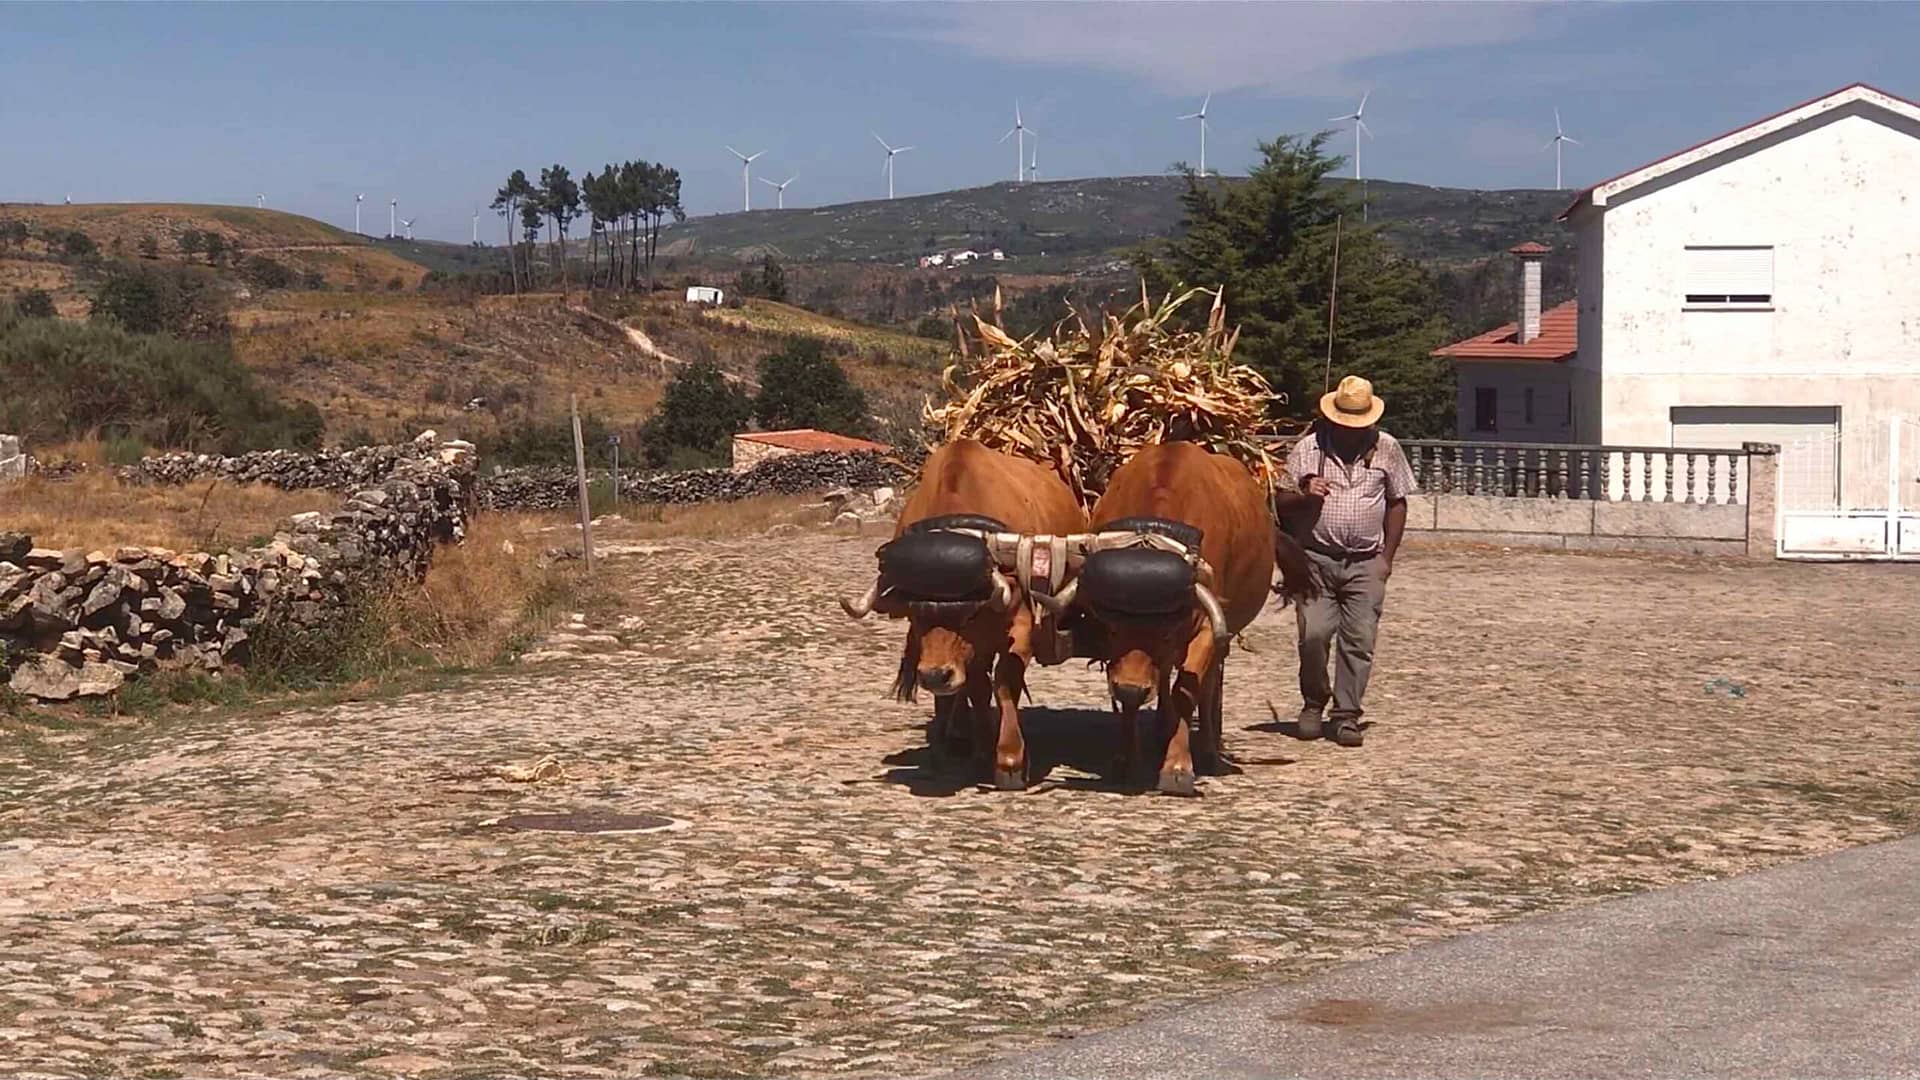 Vida rural no interior de Portugal, Caminho Português Interior de Santiago de Compostela